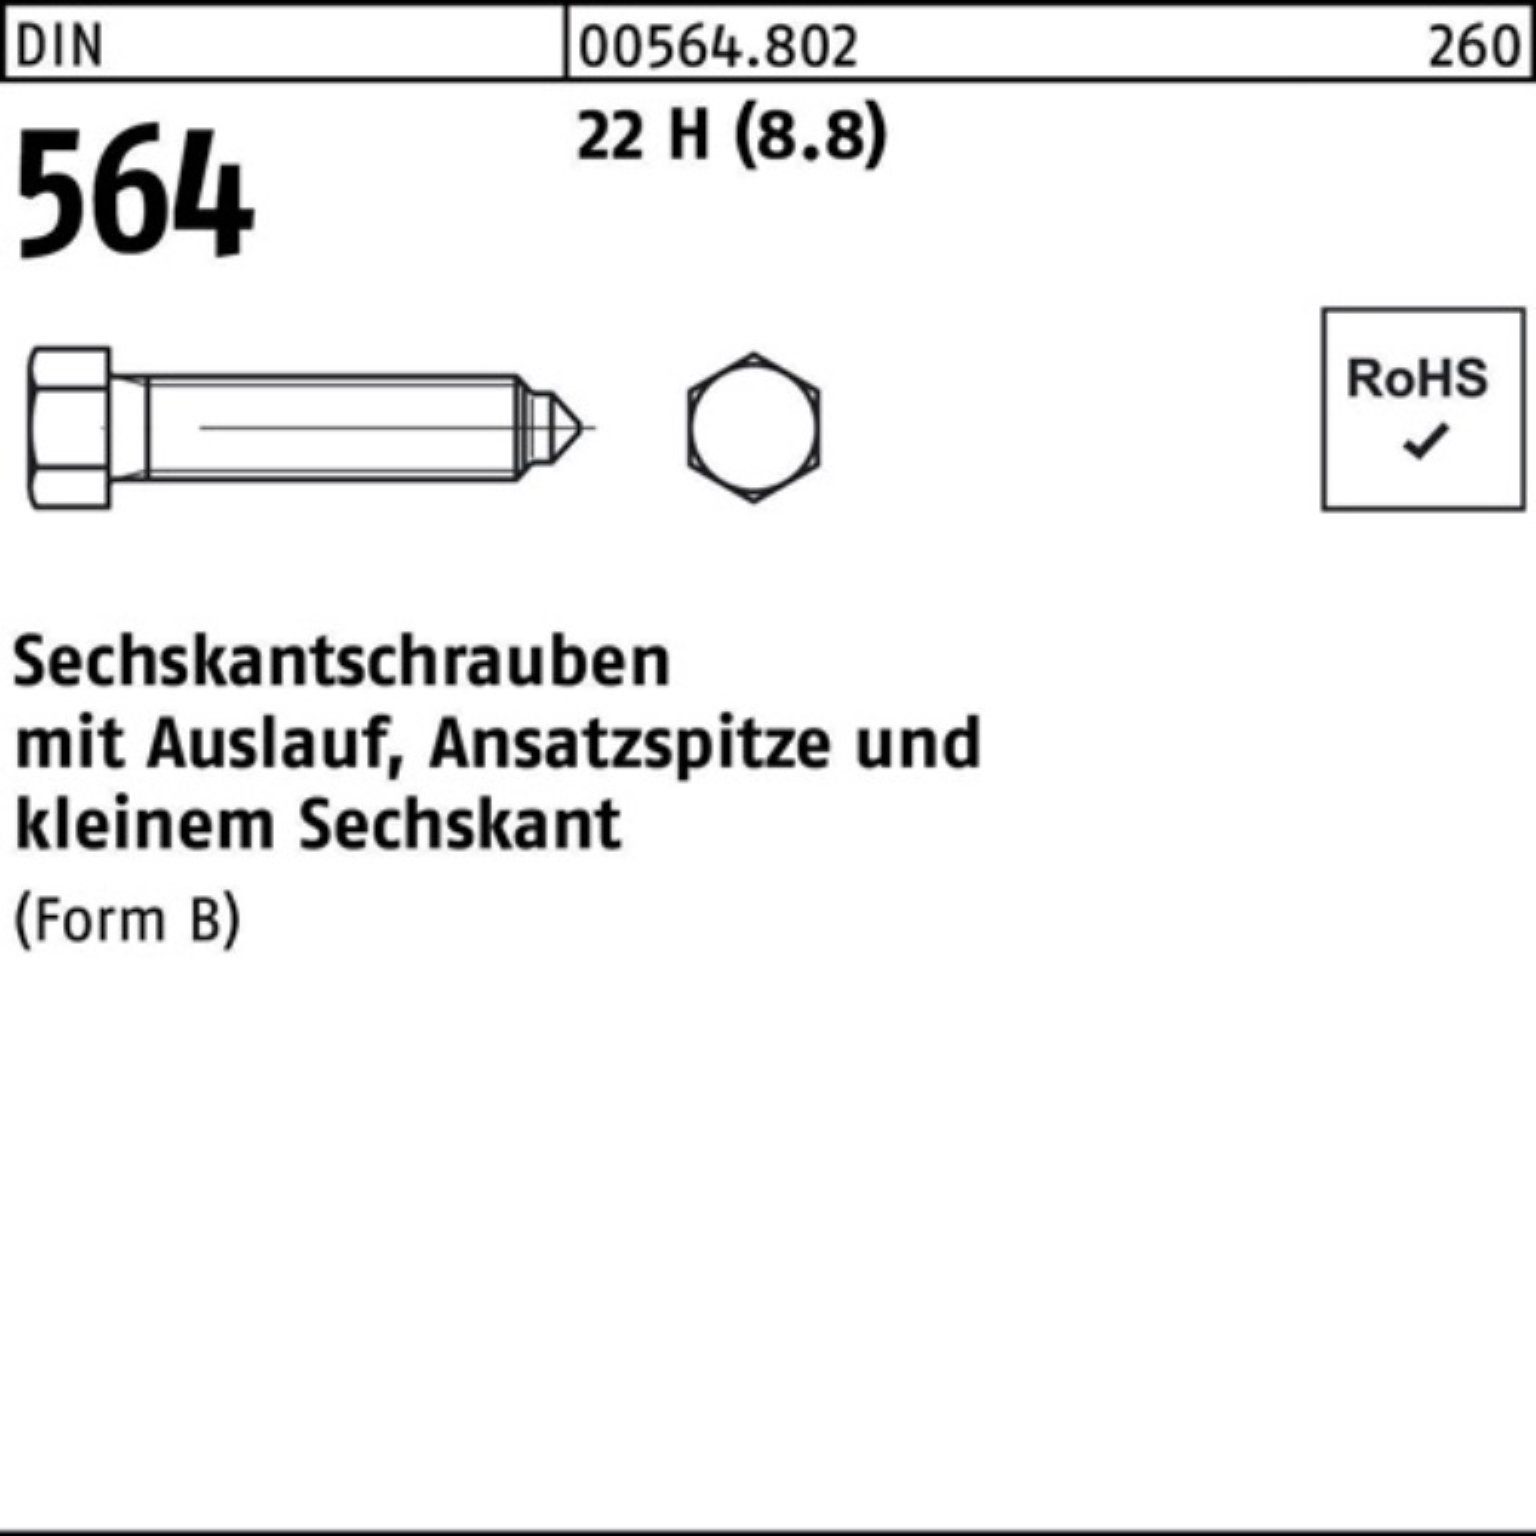 Reyher Sechskantschraube 100er Pack Sechskantschraube DIN 564 Ansatzspitze/Auslauf BM 12x 50 22